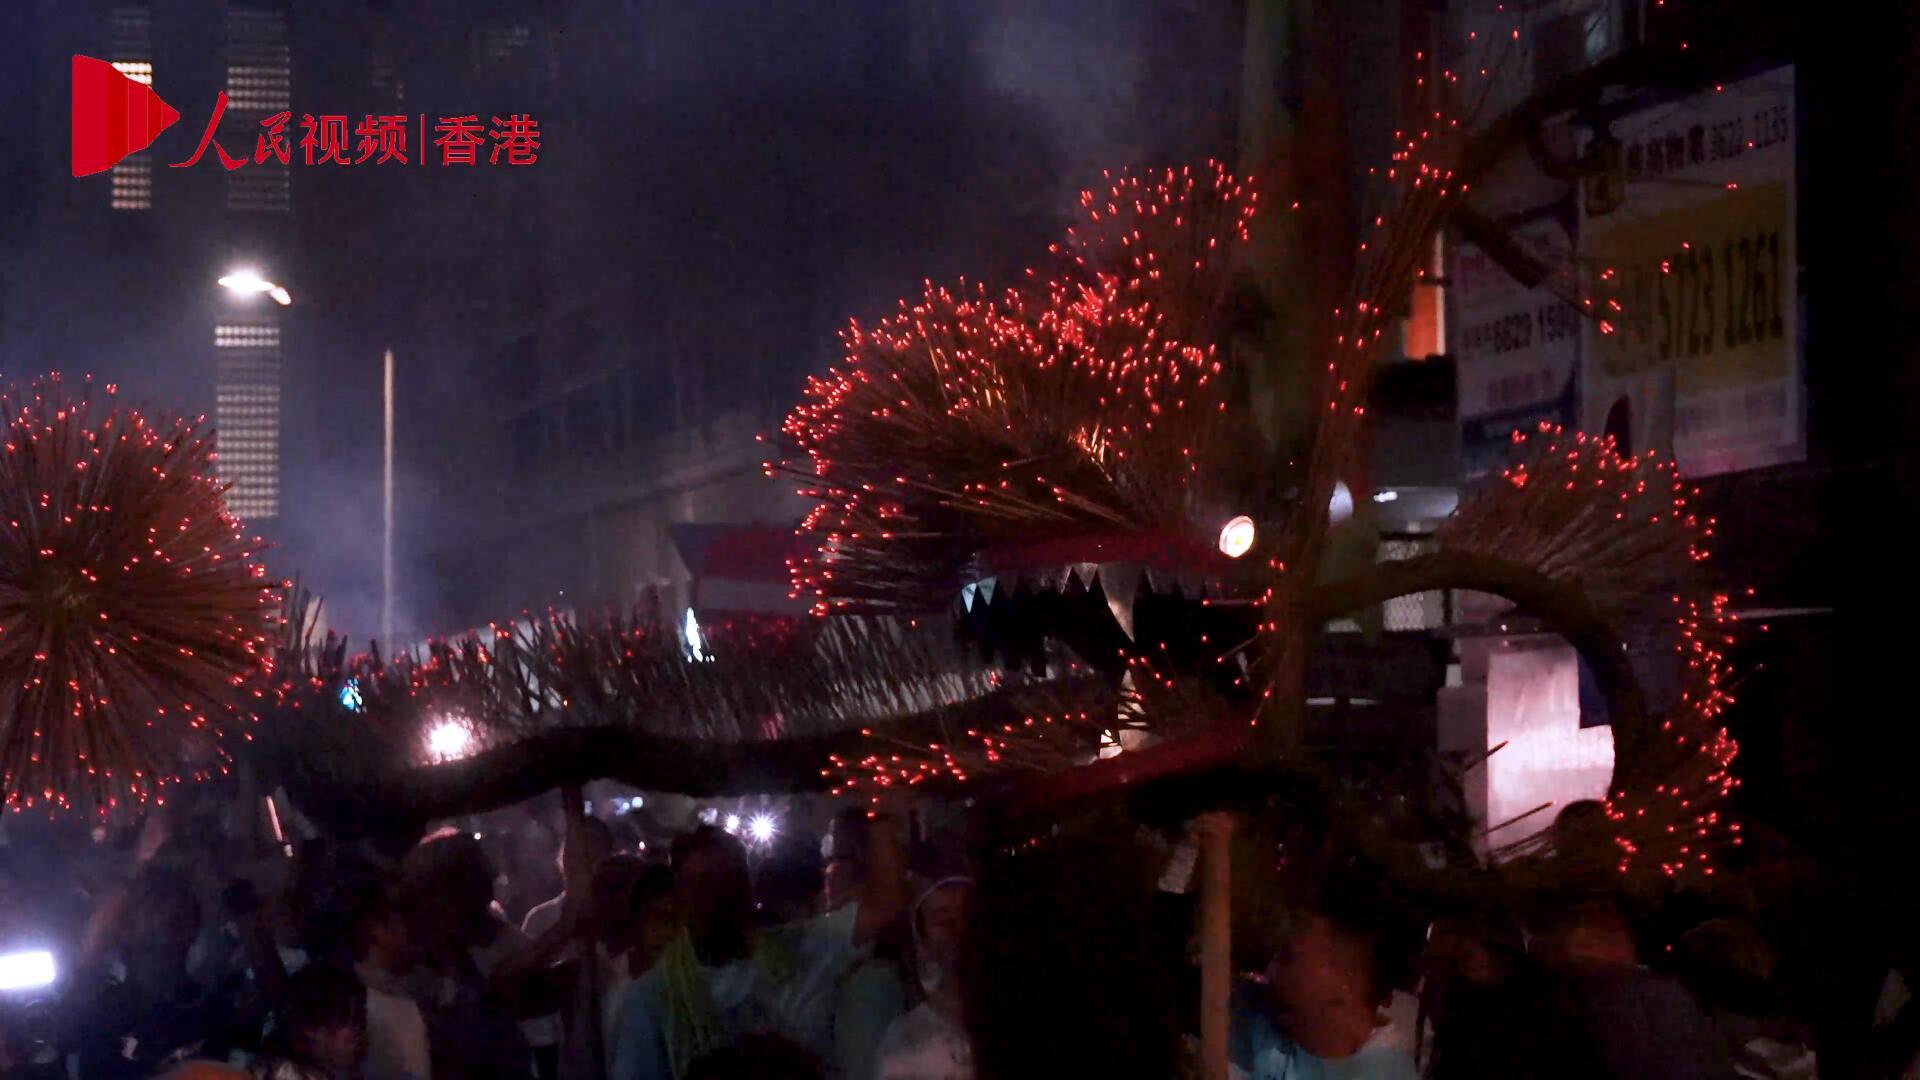 火光點點 龍騰四海——“大坑舞火龍”在香港上演